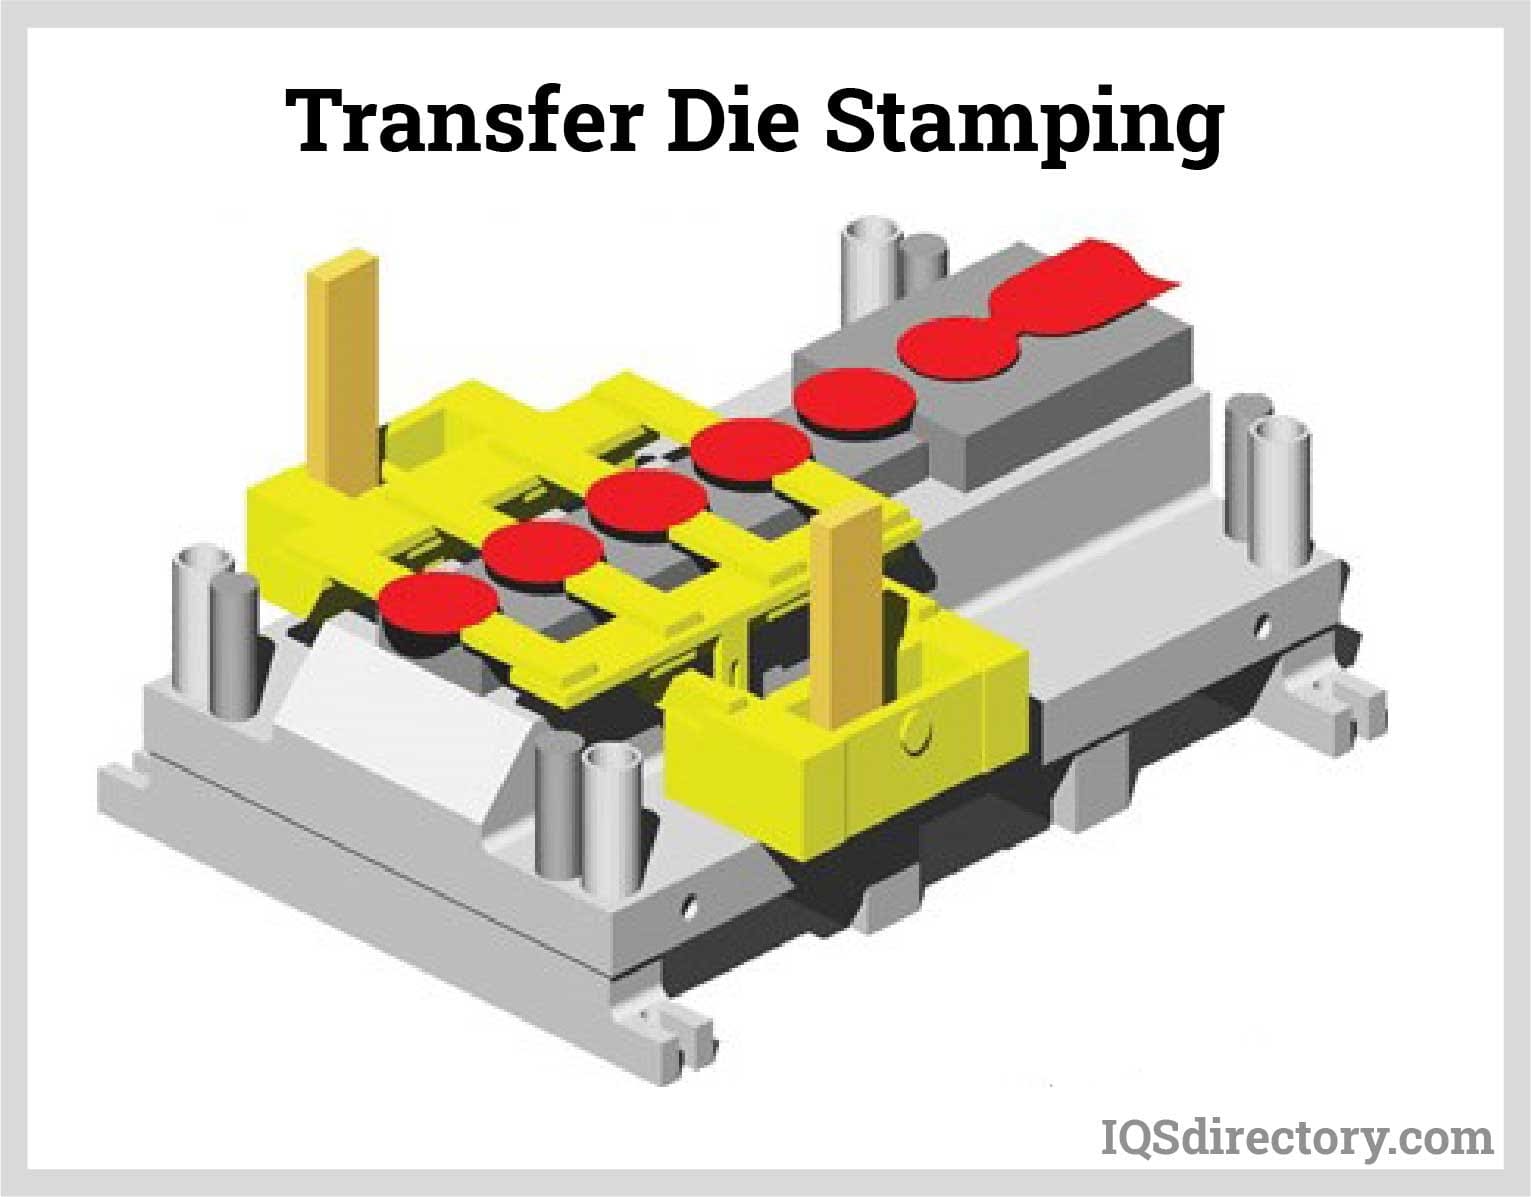 Transfer Die Stamping